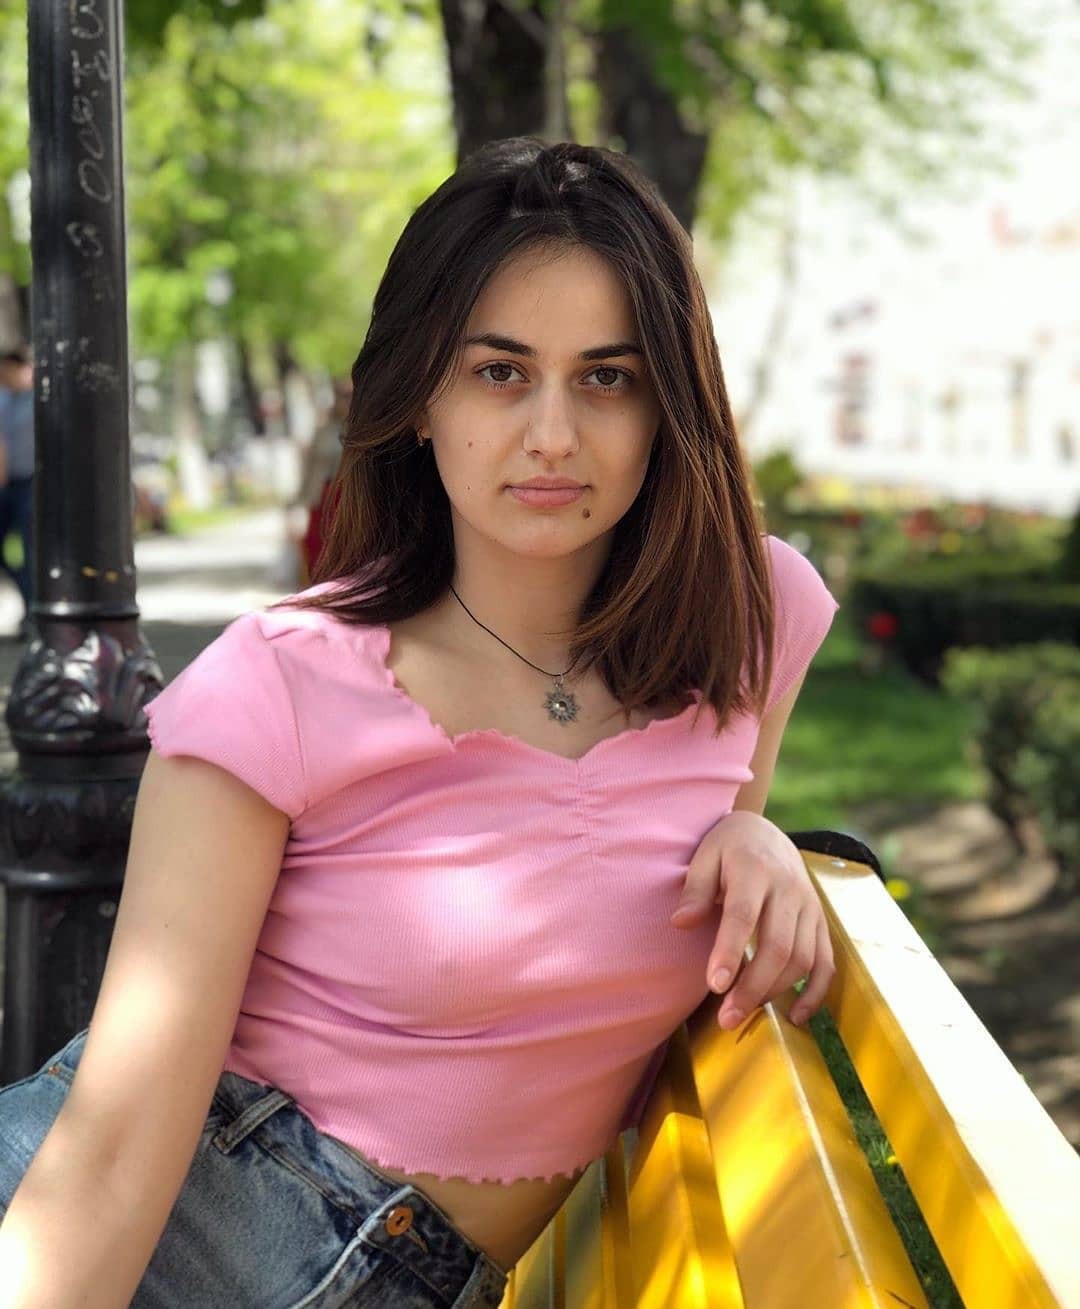 Lindas chicas calientes en Instagram, Osetia del Norte-Alania, sesión de fotos: modelo,  chicas adolescentes,  Sesión de fotos  